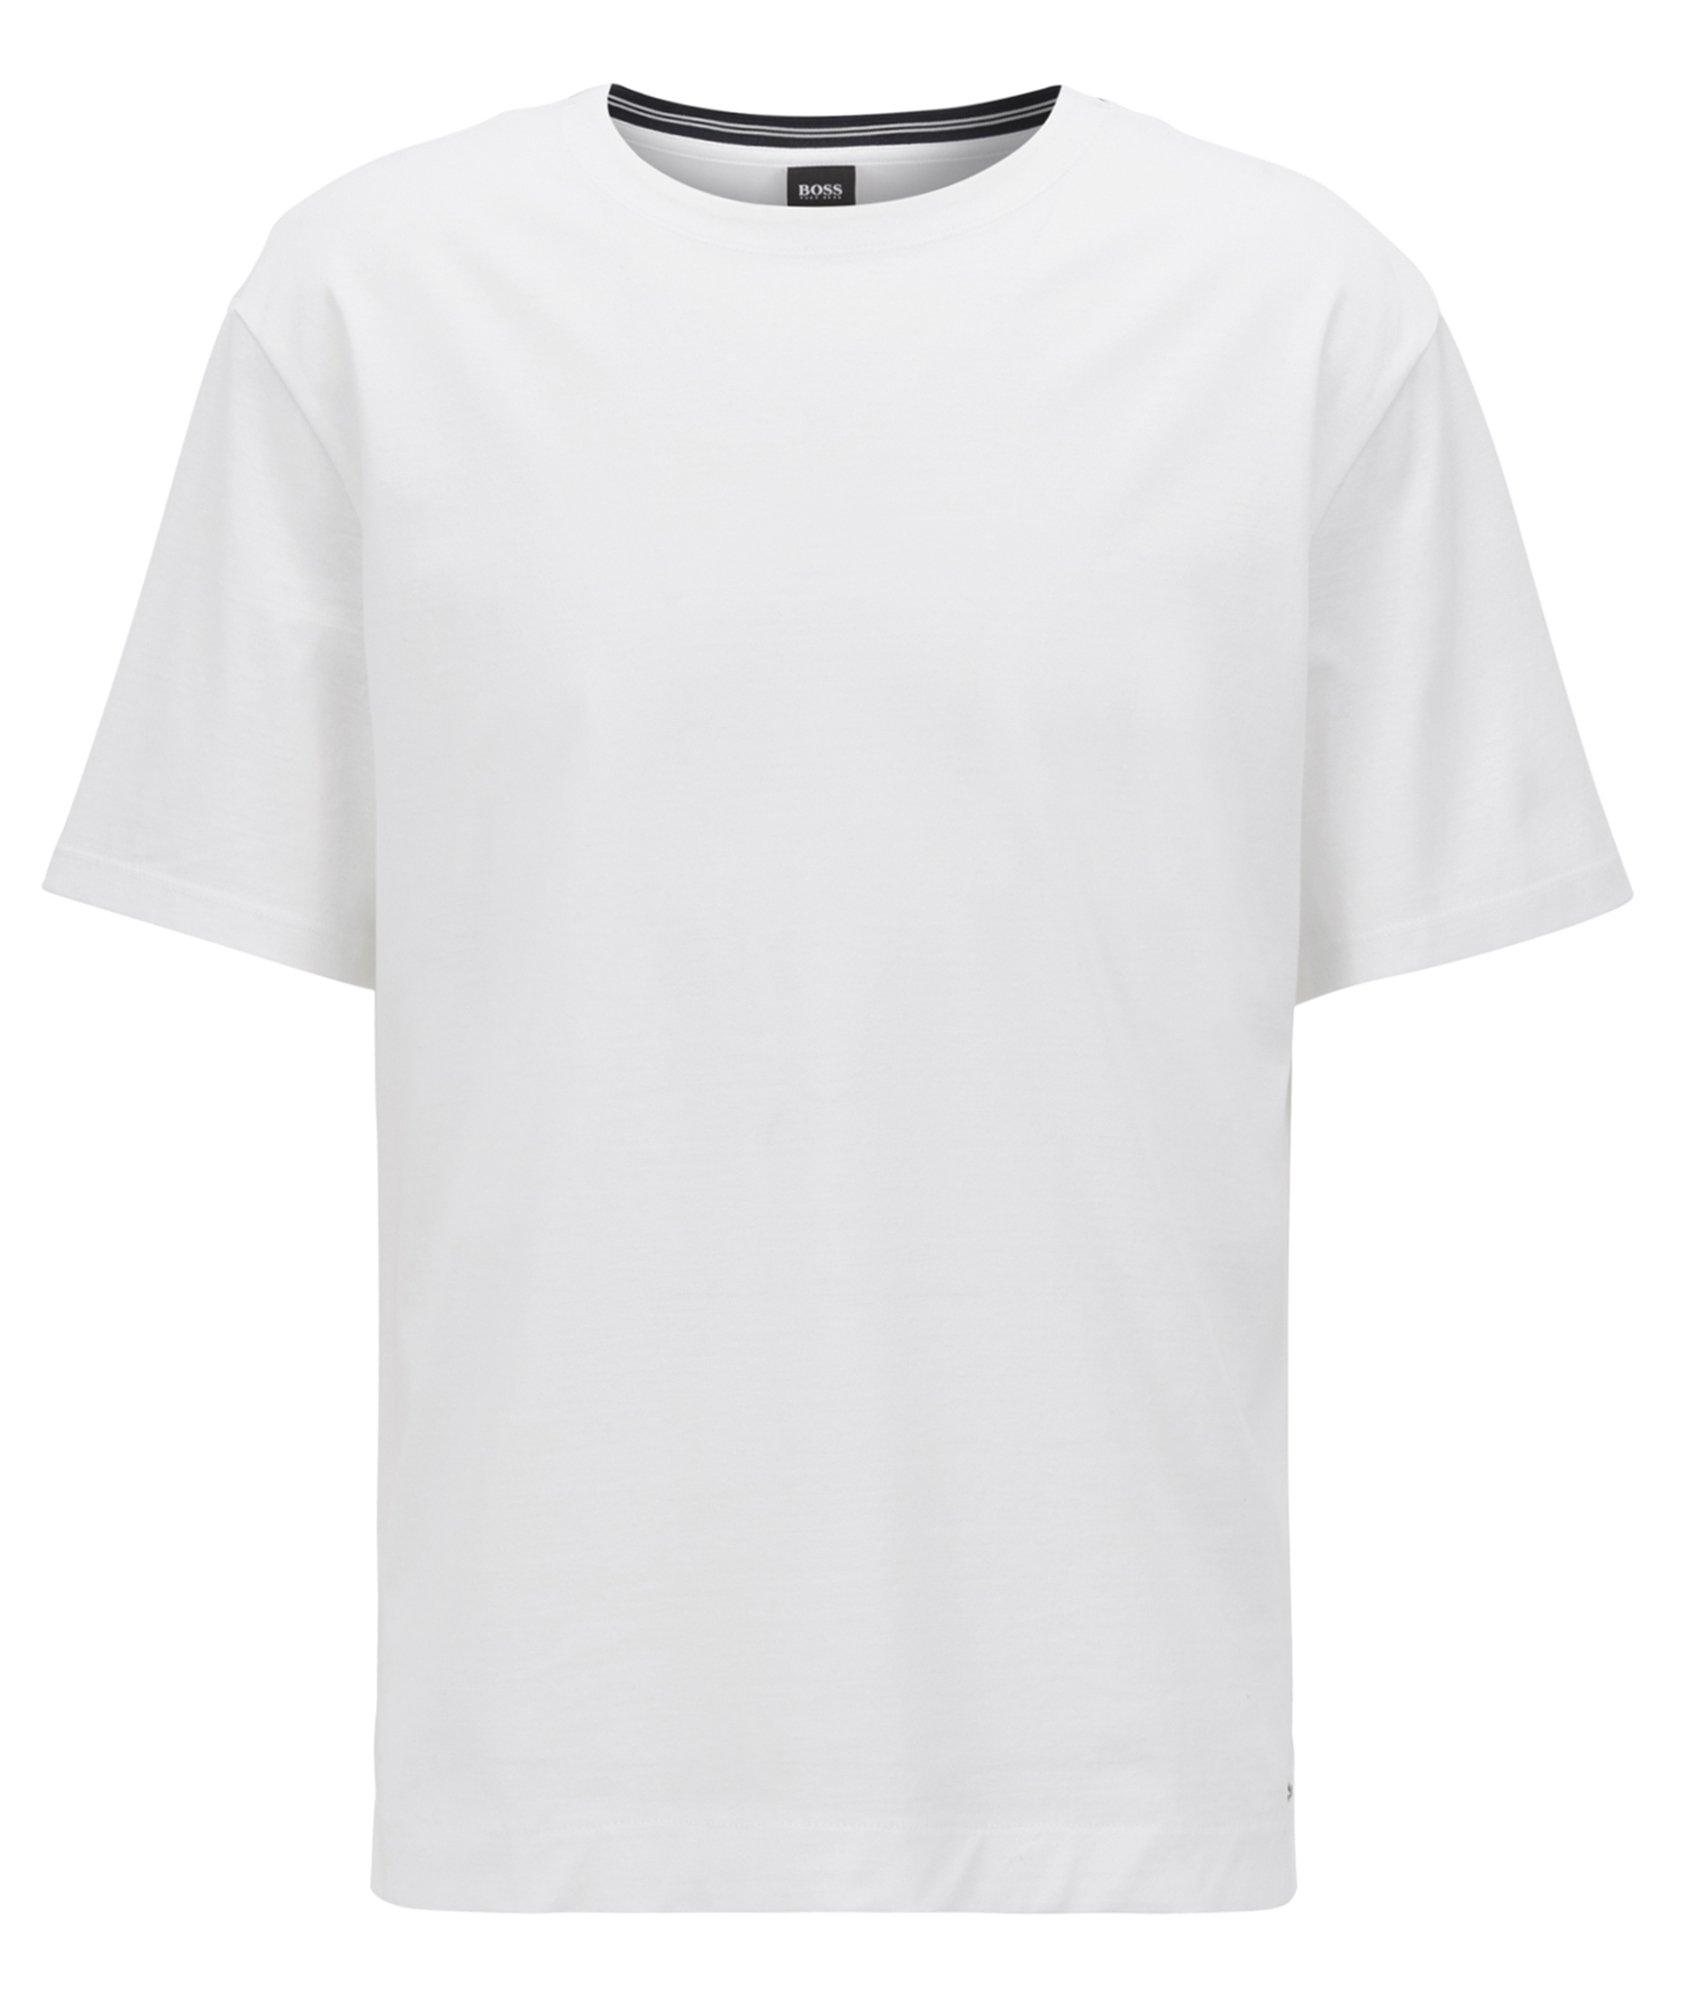 T-shirt en coton image 0